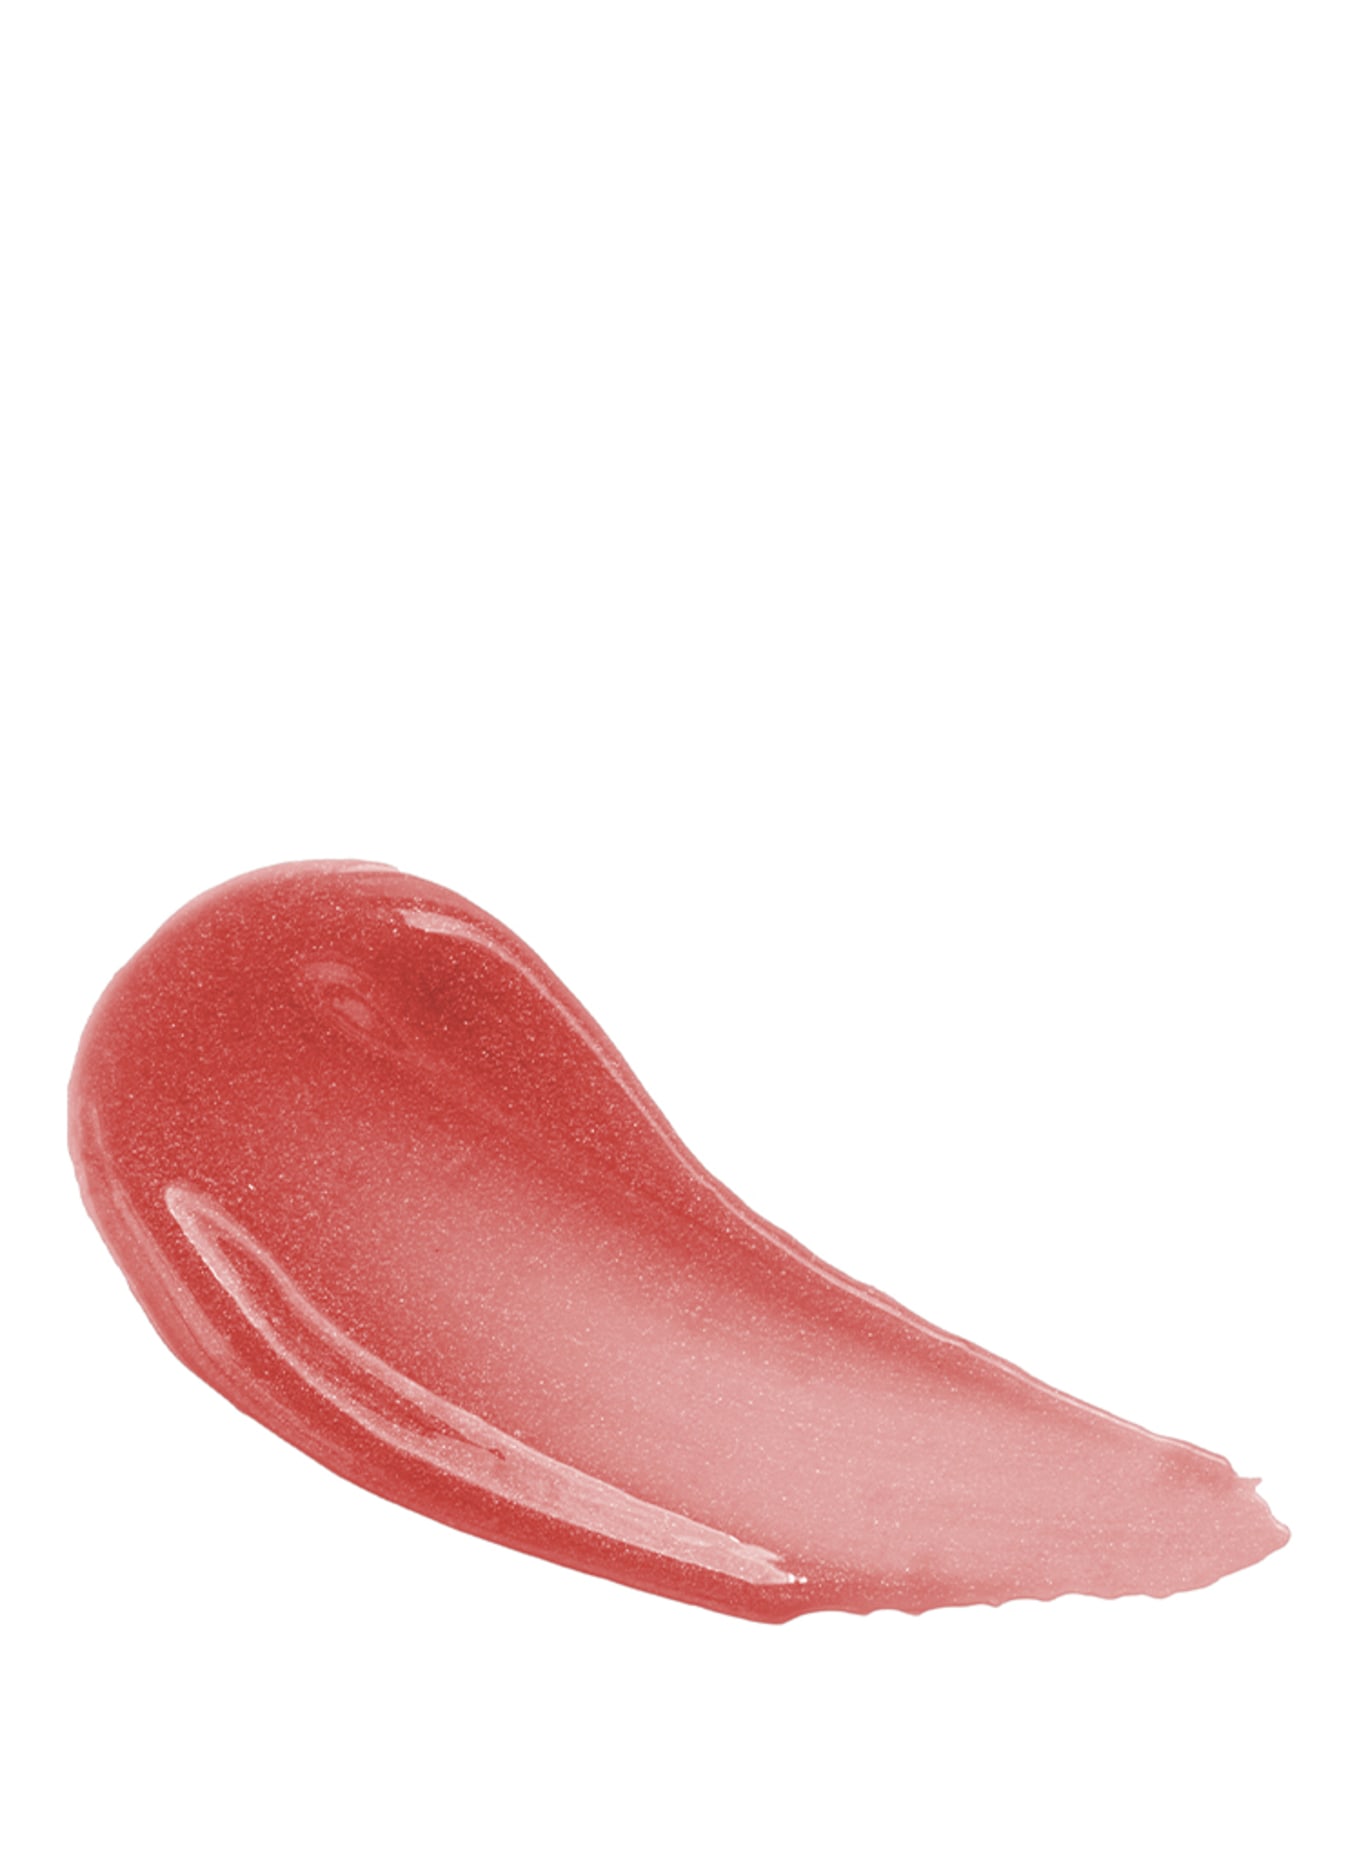 UND GRETEL KNUTZEN SHIMMER, Farbe: Apricot Shimmer 05 (Bild 2)